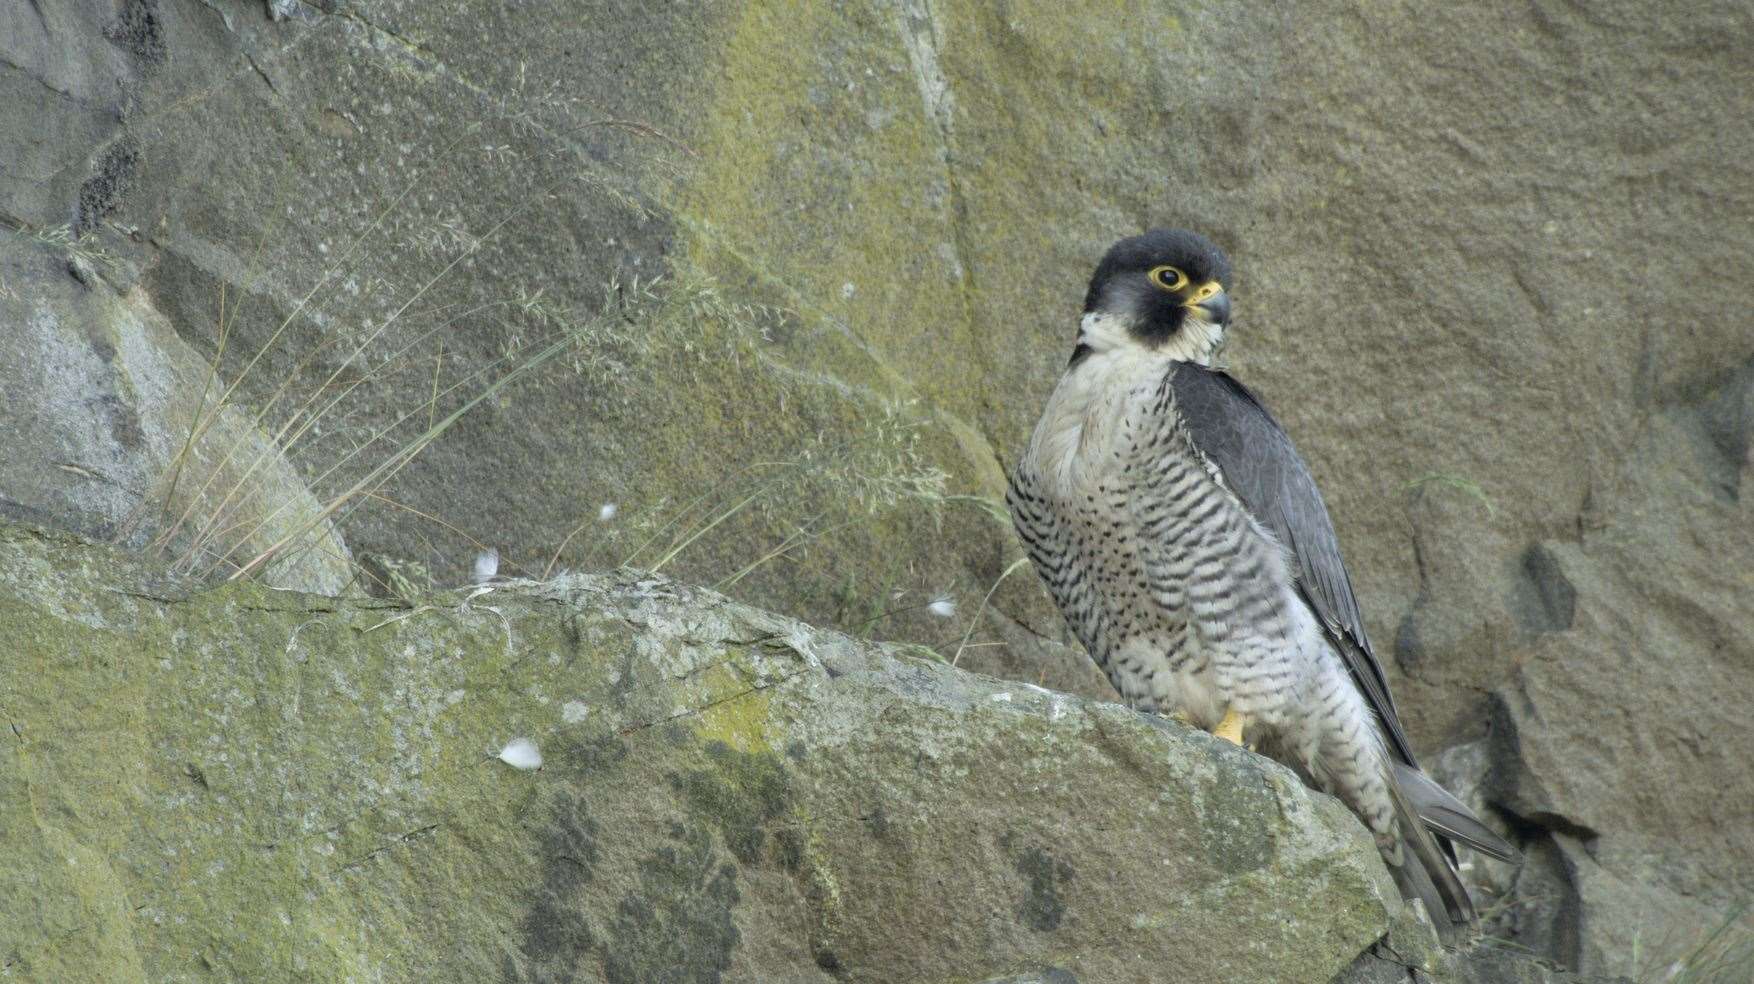 Scotland The New Wild: Animals in focus incude,the peregrine falcon